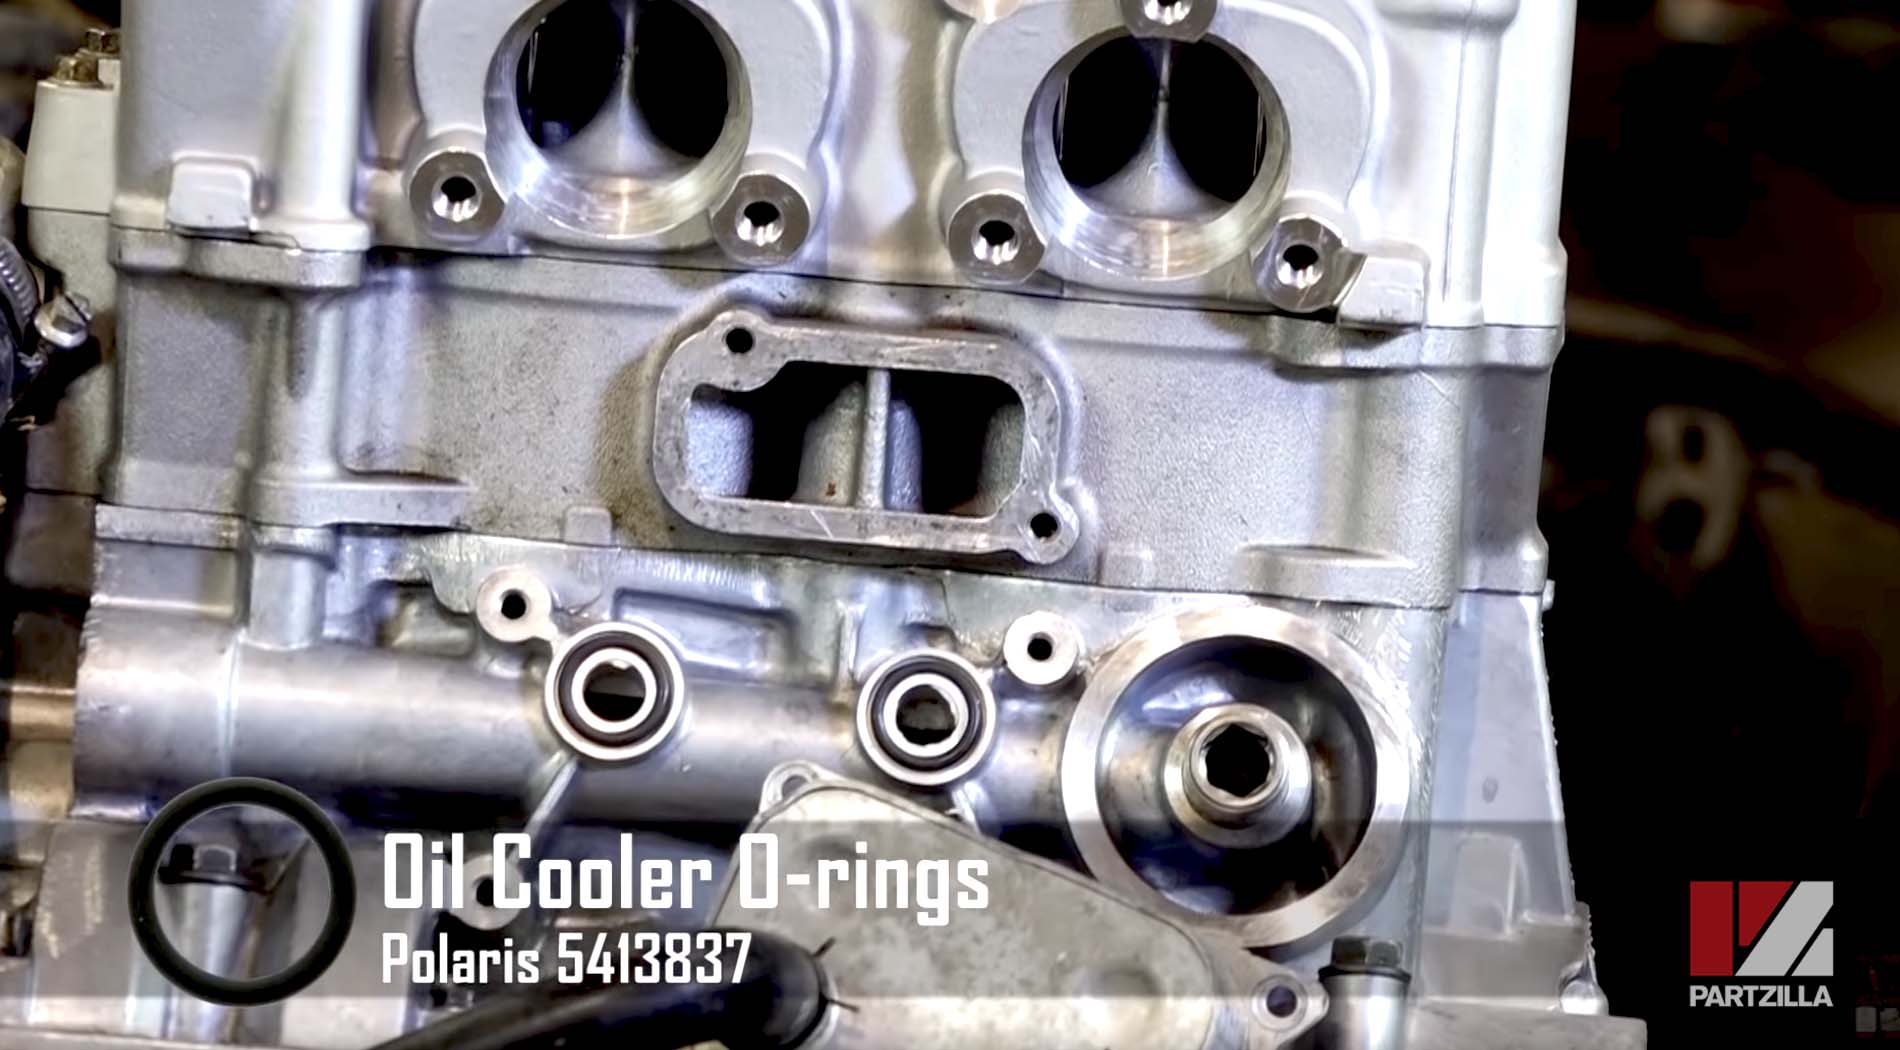 Polaris RZR 900 engine rebuild oil cooler rings